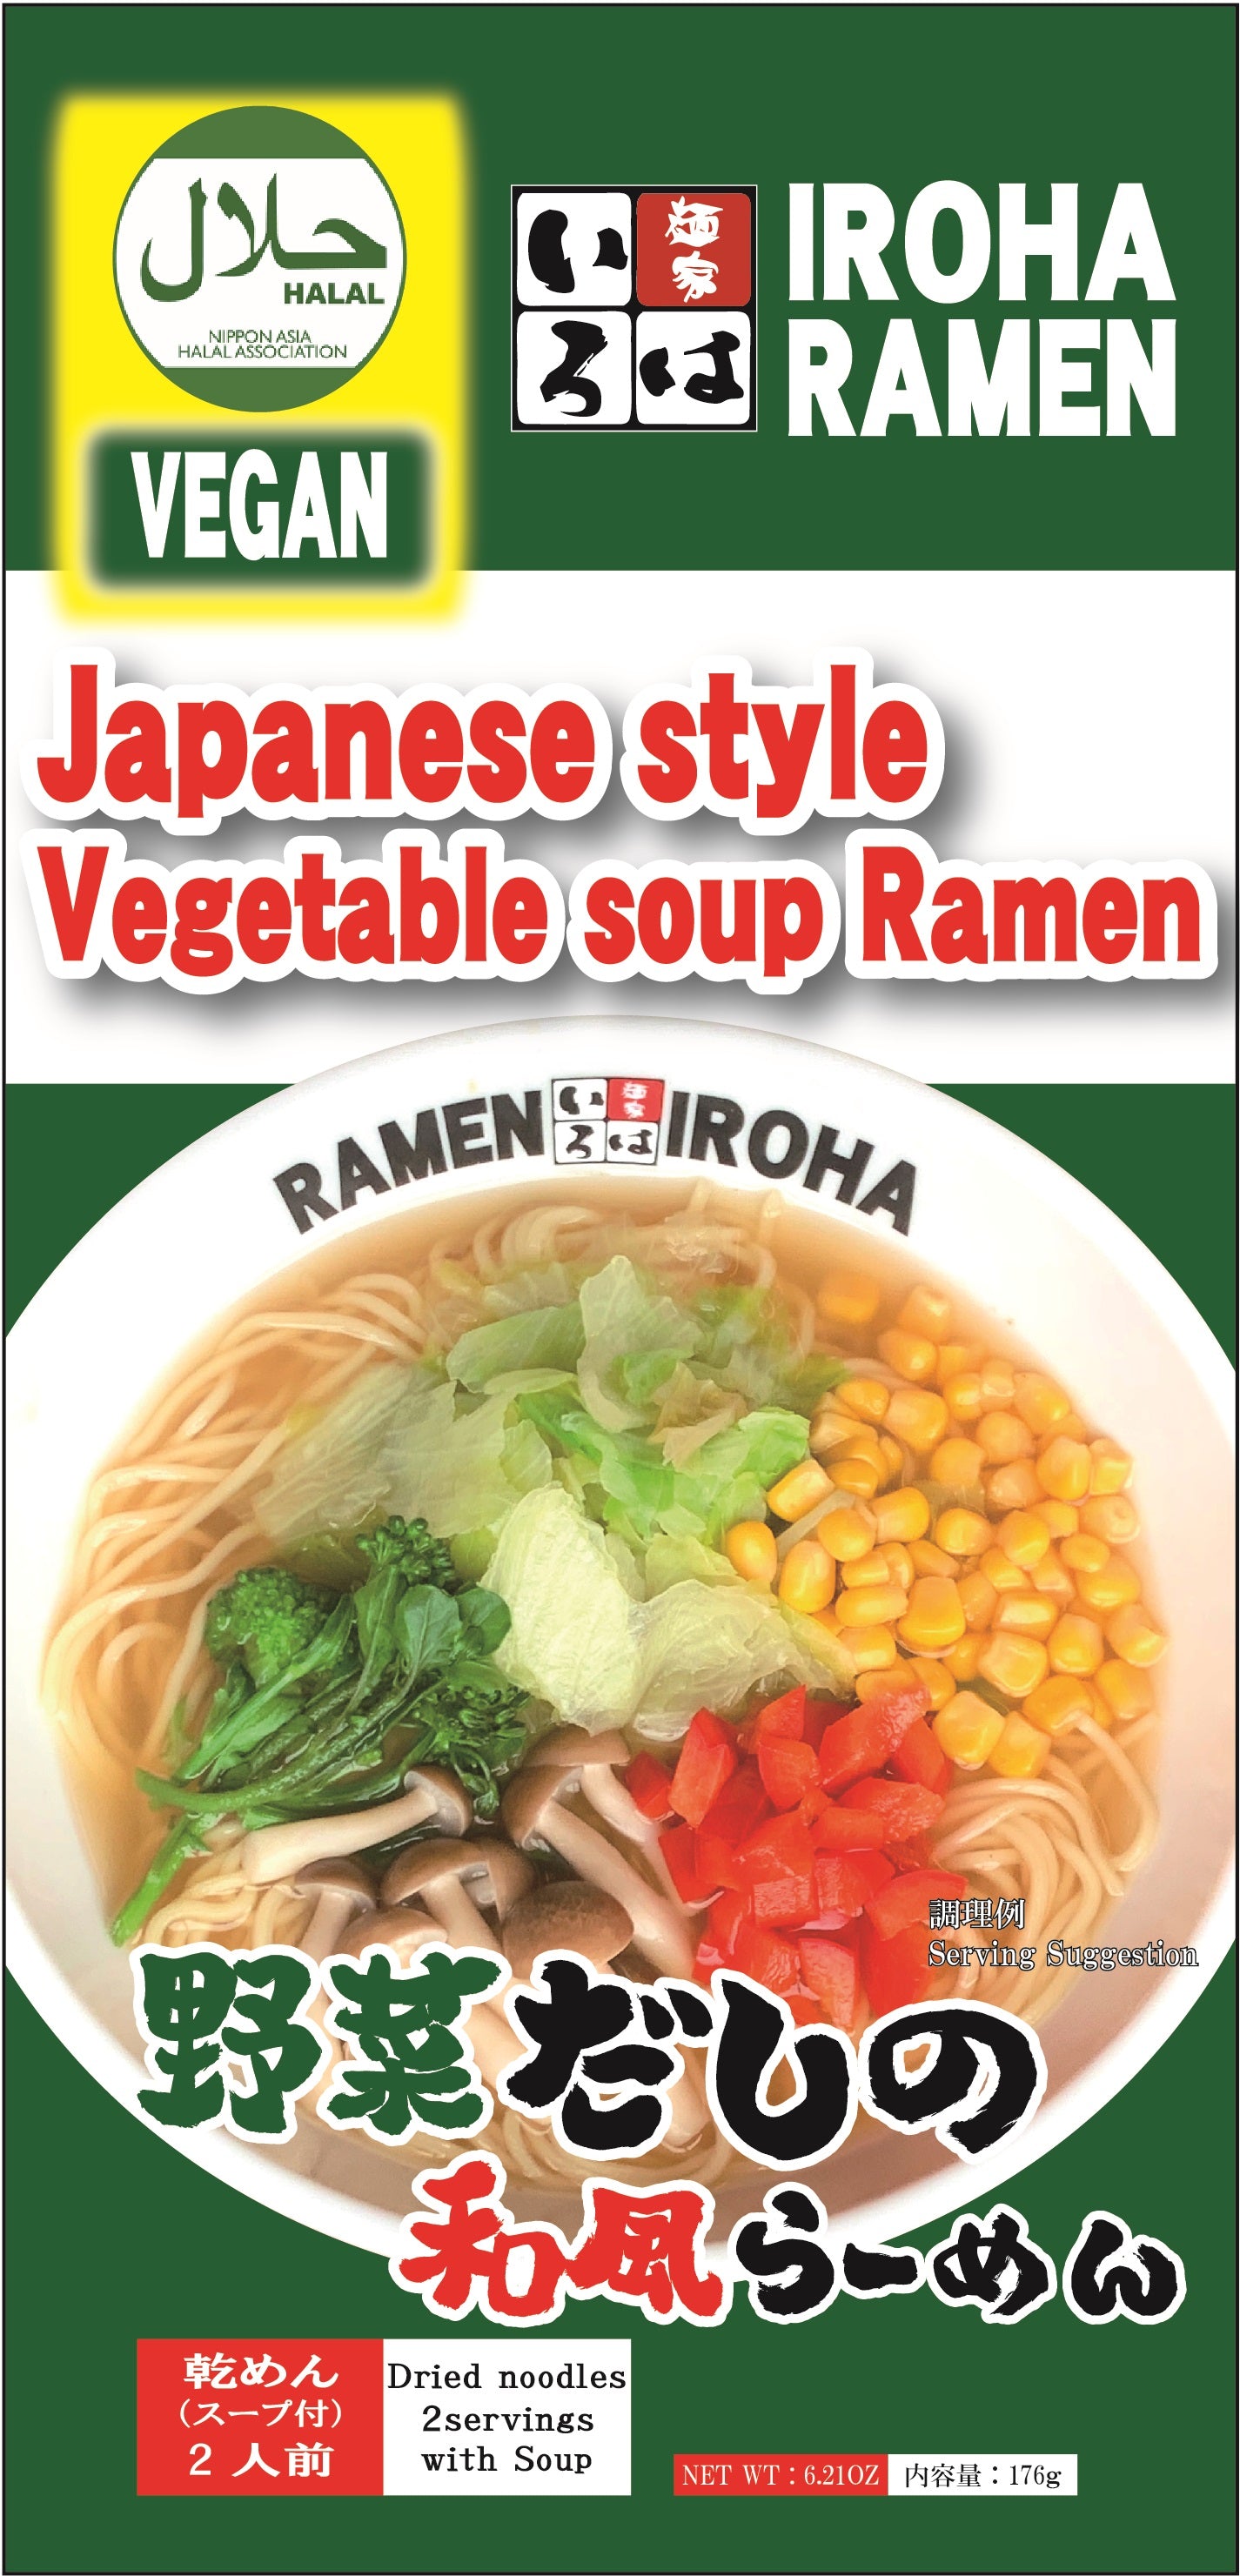 ハラル＆ビーガン野菜だしの和風らーめん HALAL&VEGAN Japanese style Vegetable soup Ramen